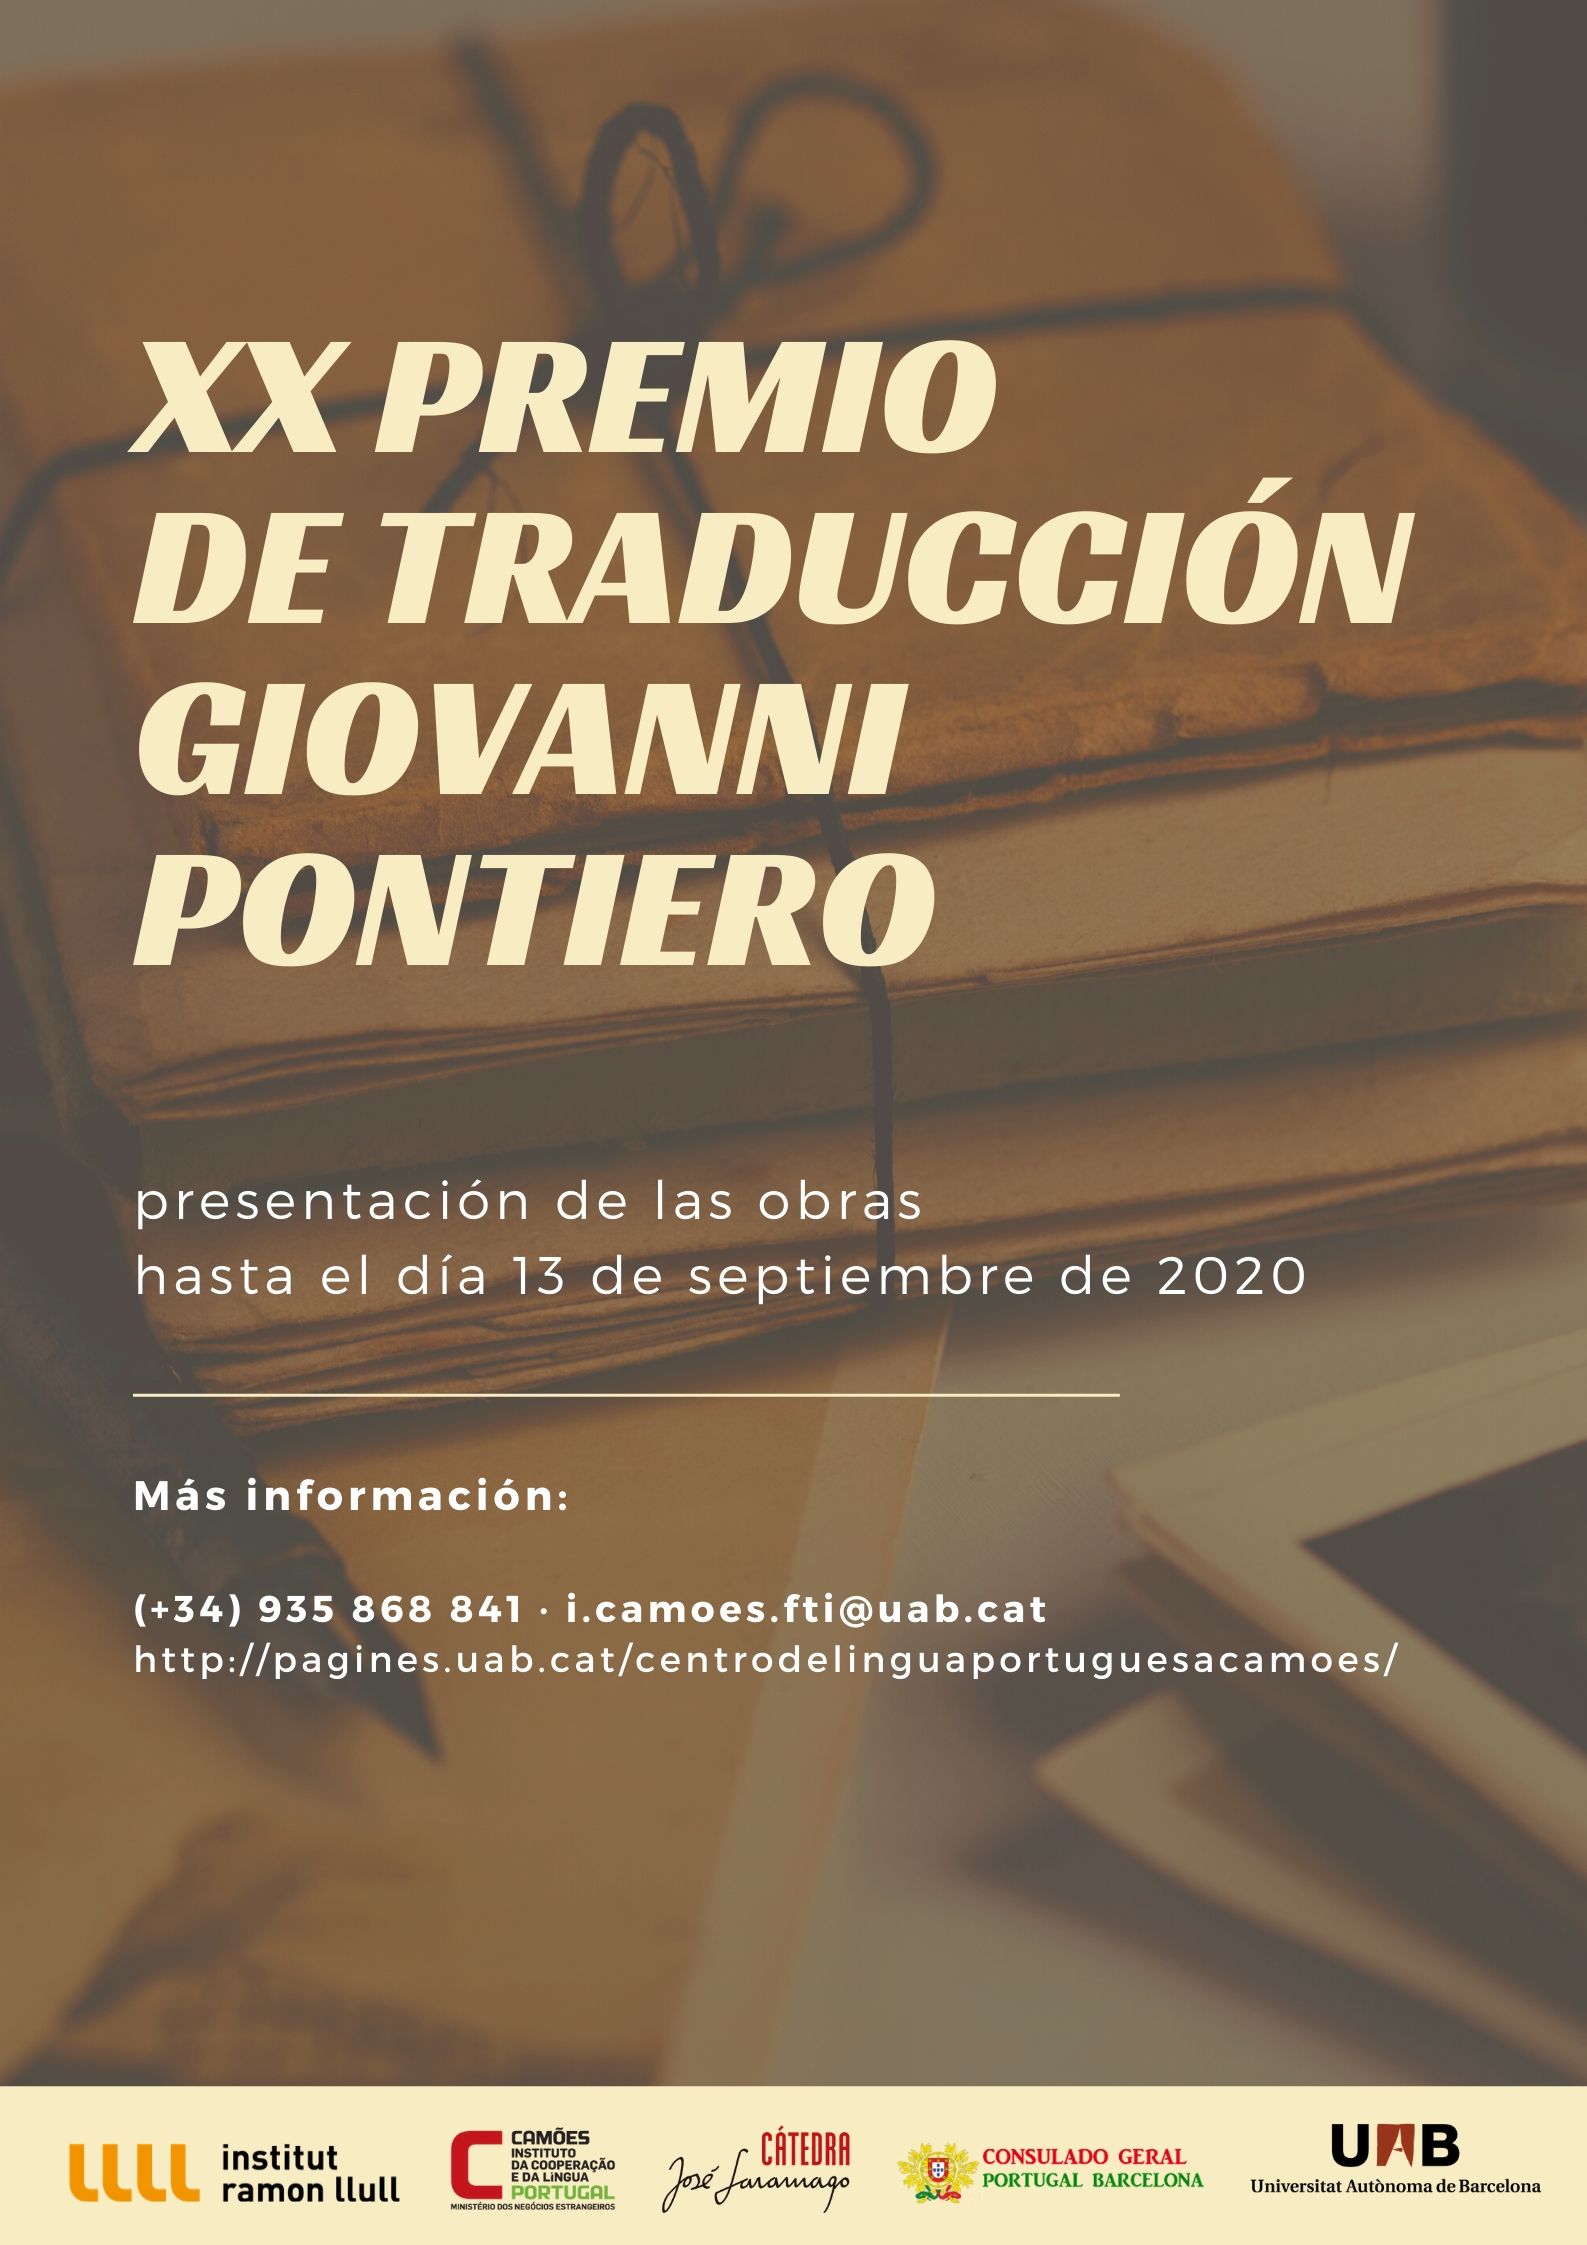 XIX Pontiero 2019 3